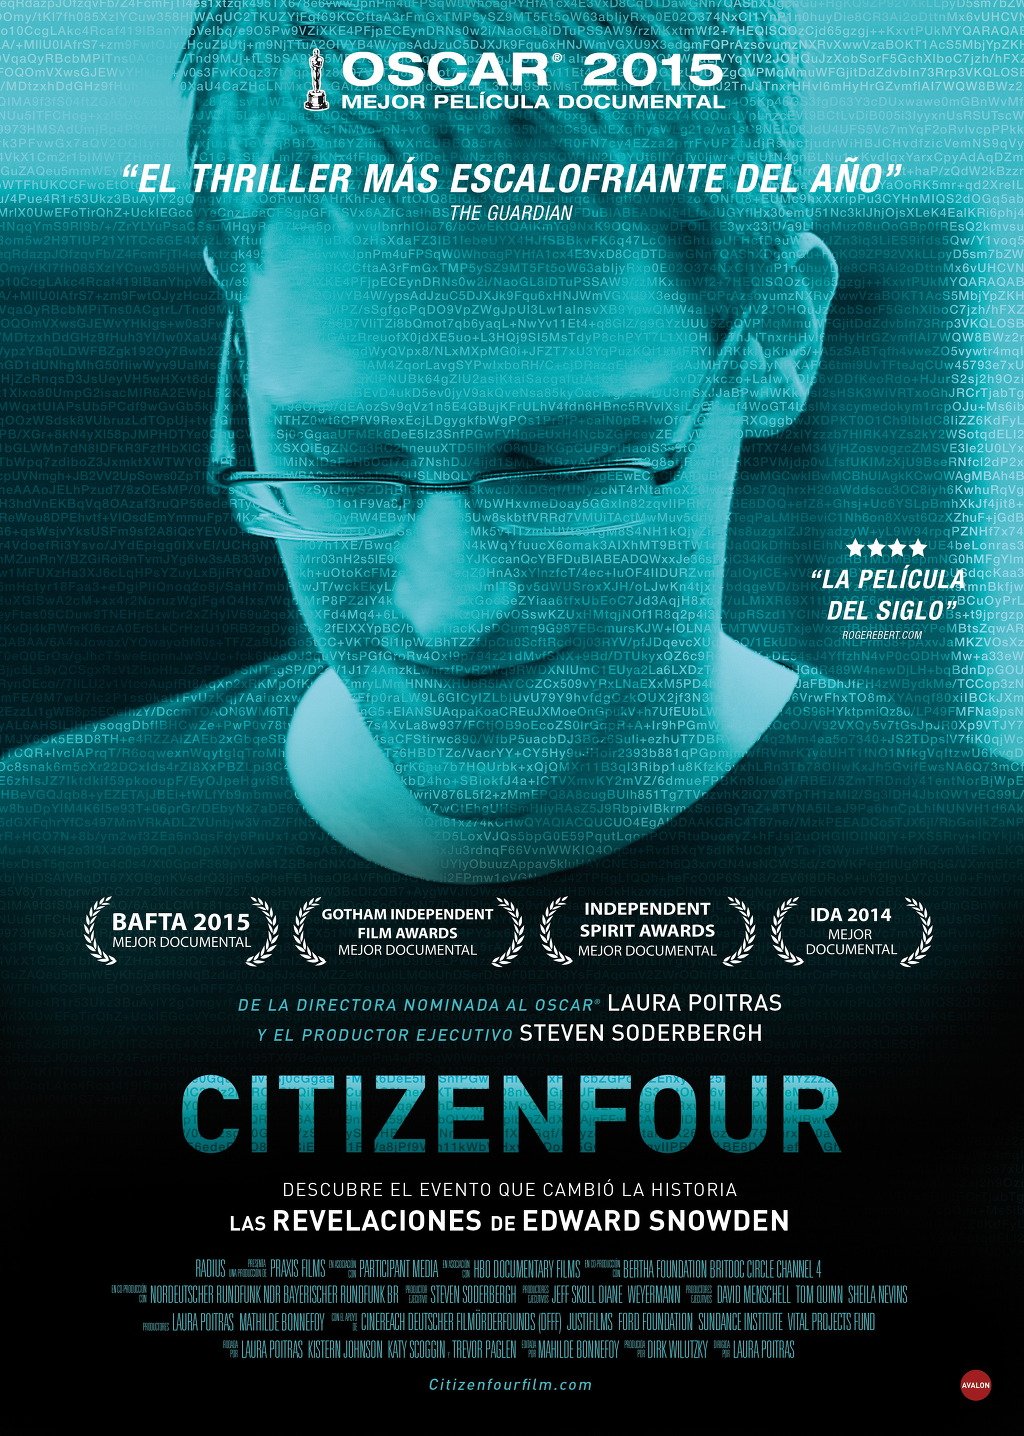 Citizenfour (2014) แฉกระฉ่อนโลก [ซับไทย] ดูหนังออนไลน์ HD